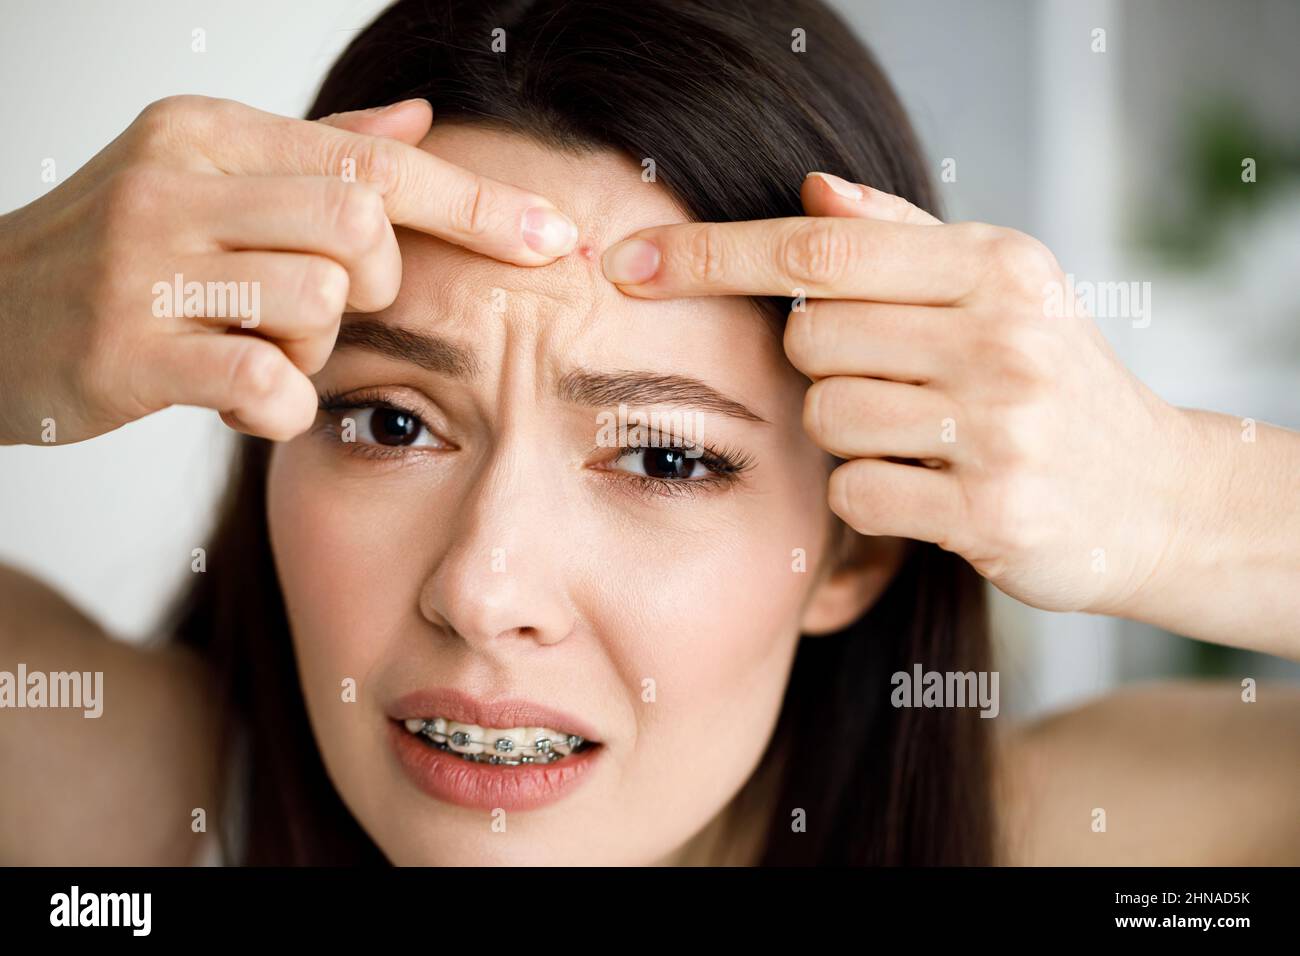 Una donna schiaccia un pimple mentre guarda nello specchio. Foto Stock